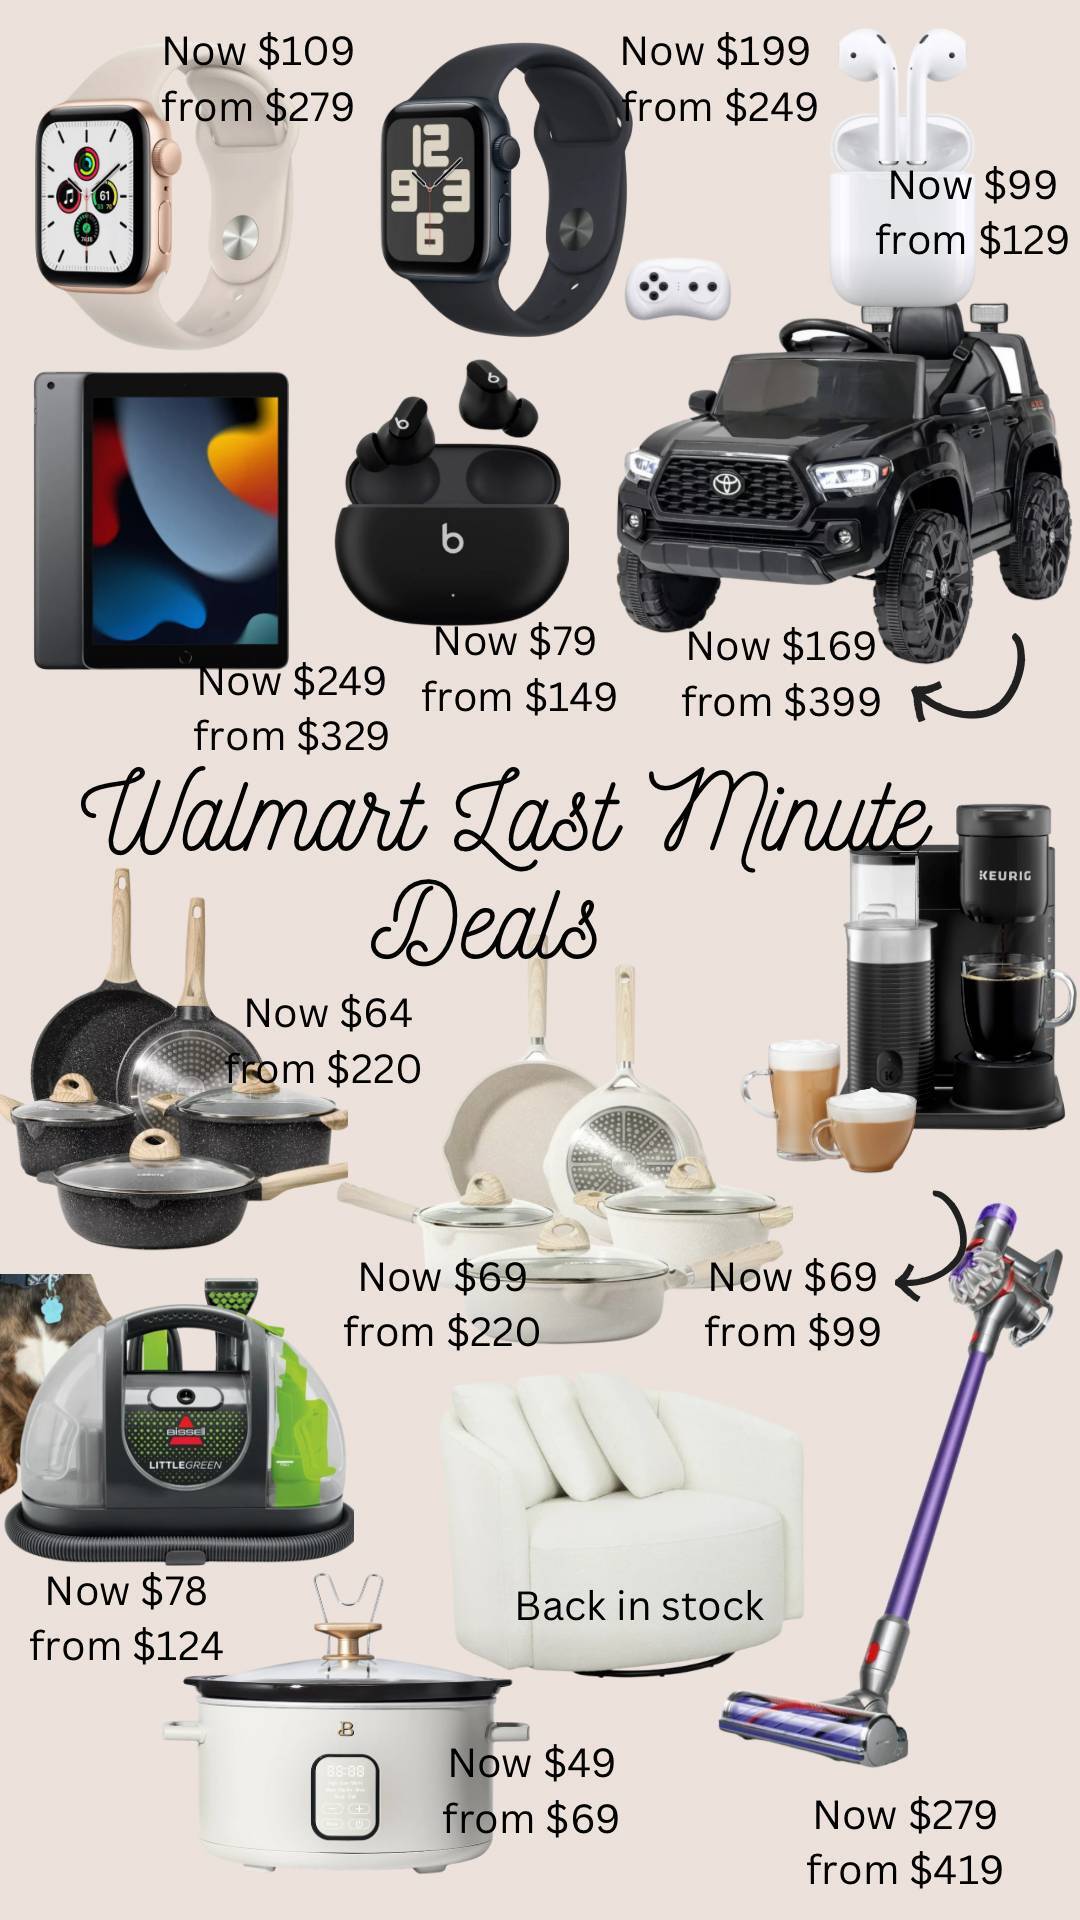 Last Minute Deals at Walmart